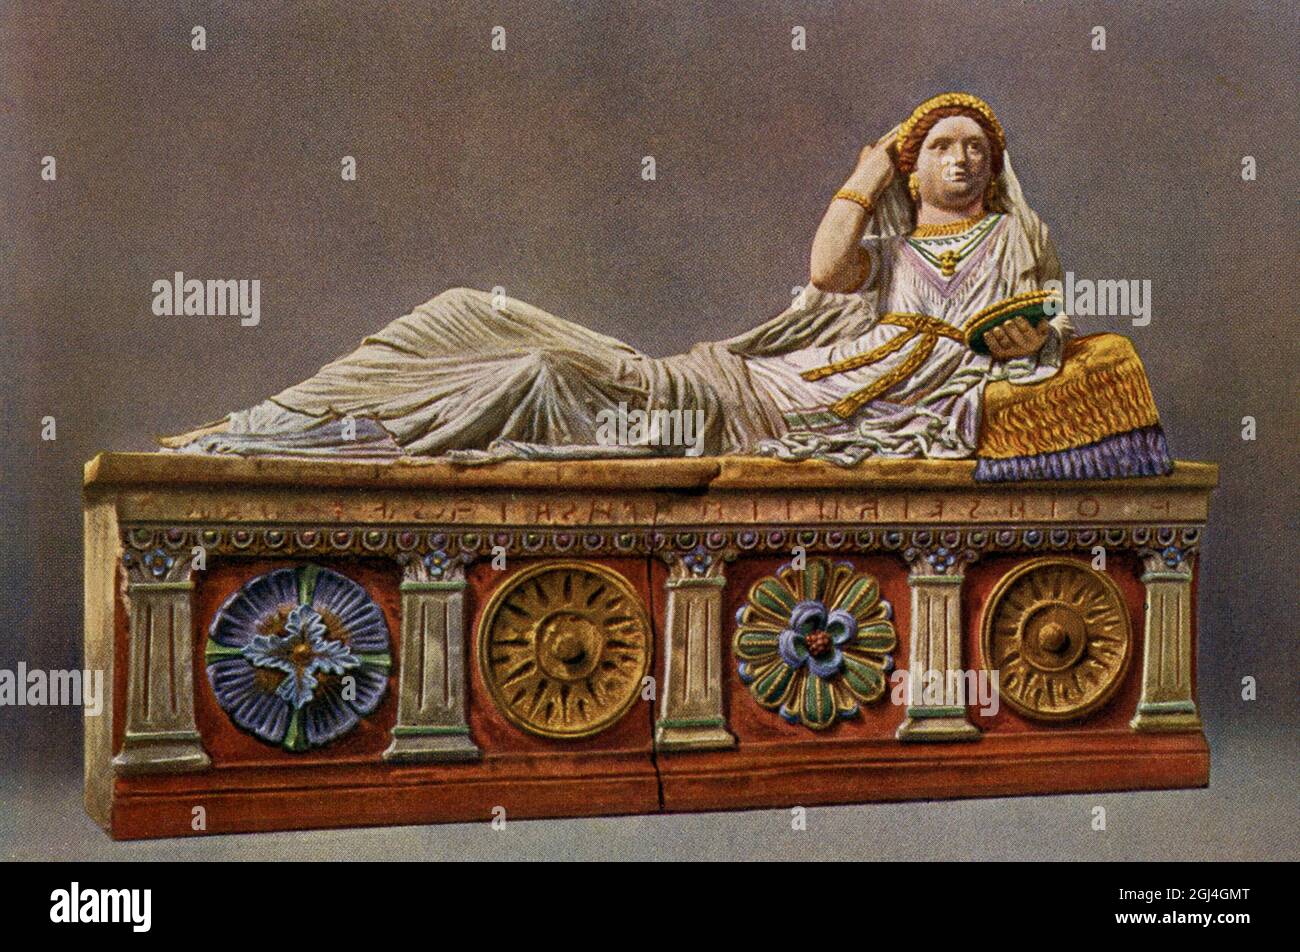 L'illustration 1910 montre un sarcophage étrusque de Chiusi. L'original se trouve dans le musée archéologique de Florence. La couverture de ce sarcophage en terre cuite dépeint Larthia Seianti, une riche dame qui vivait dans le sud de la Toscane près de Chiusi au deuxième siècle avant Jésus-Christ. La femme est dépeint couché sur un kline. Elle porte un vêtement somptueux et coloré, et sa figure est ornée de bijoux riches. Un diadème fait de fleurs, probablement une couronne, embellit ses cheveux. Un collier décoré d’un médaillon représentant la tête de Medusa est suspendu autour de son cou. Le civil étrusque Banque D'Images